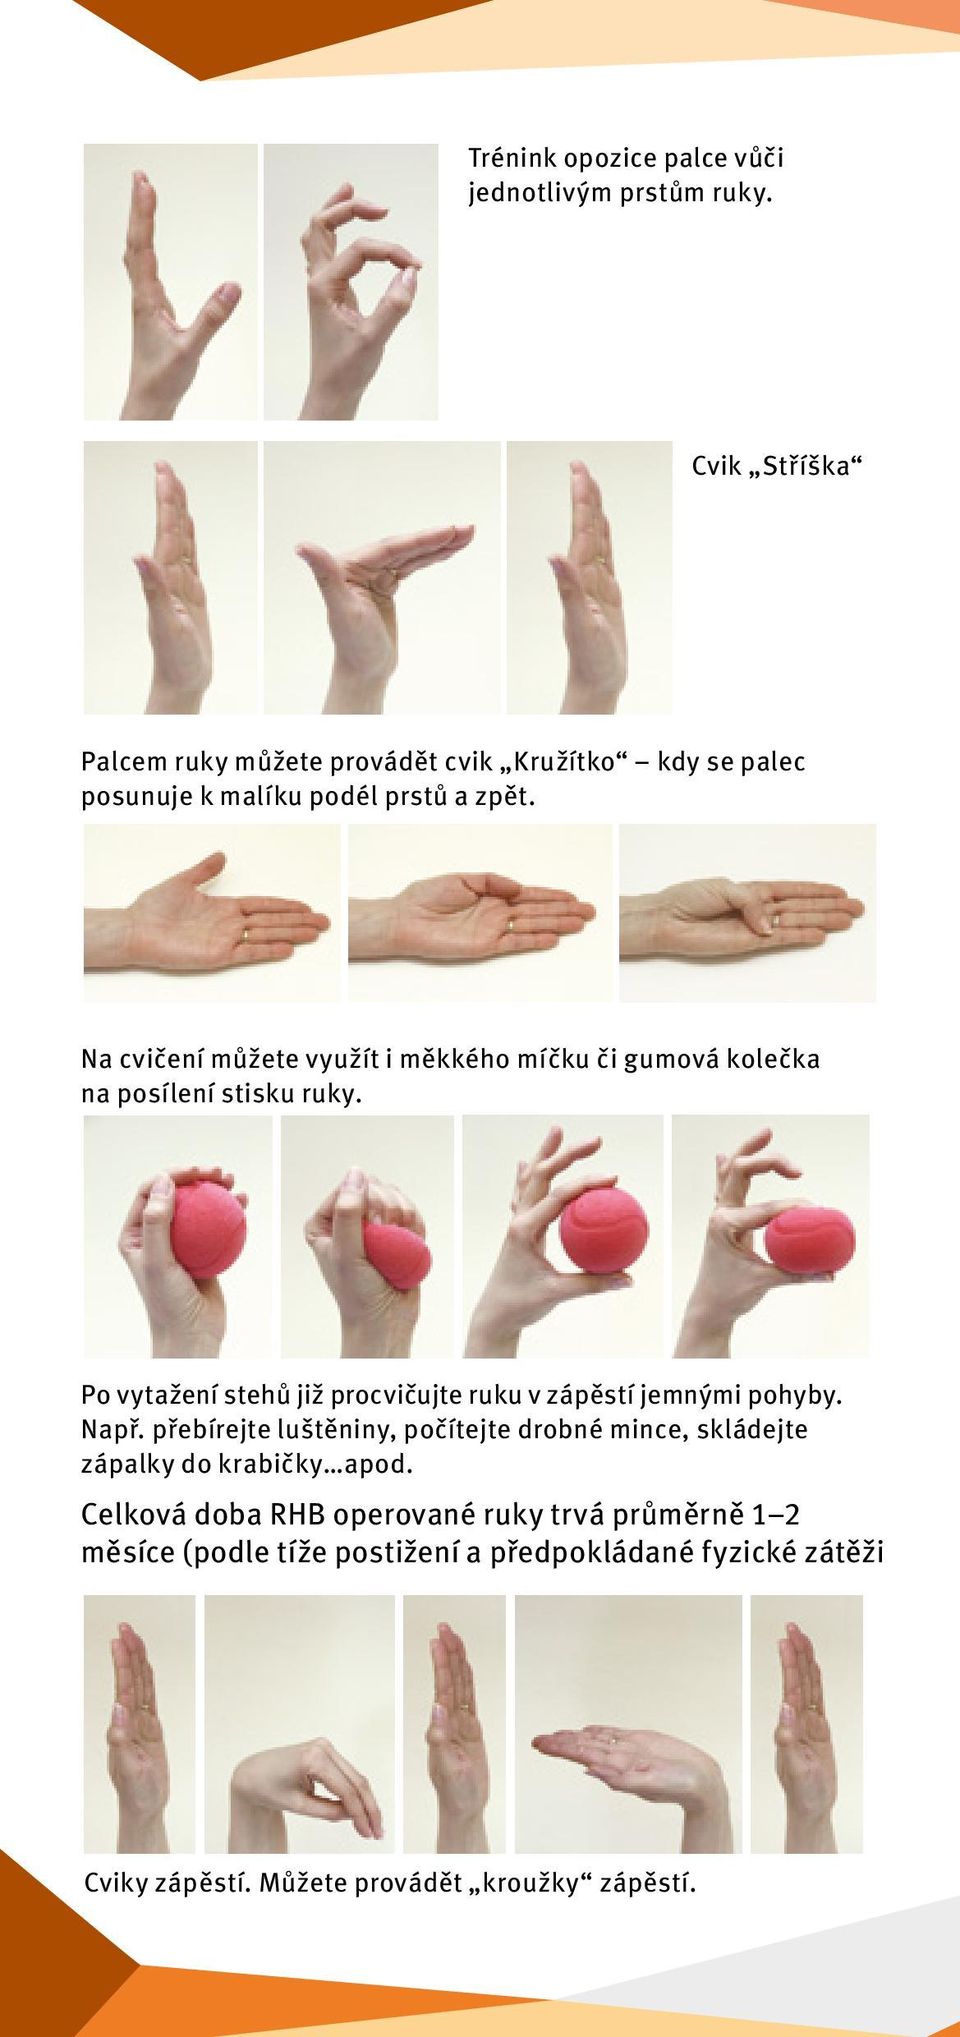 Na cvičení můžete využít i měkkého míčku či gumová kolečka na posílení stisku ruky.